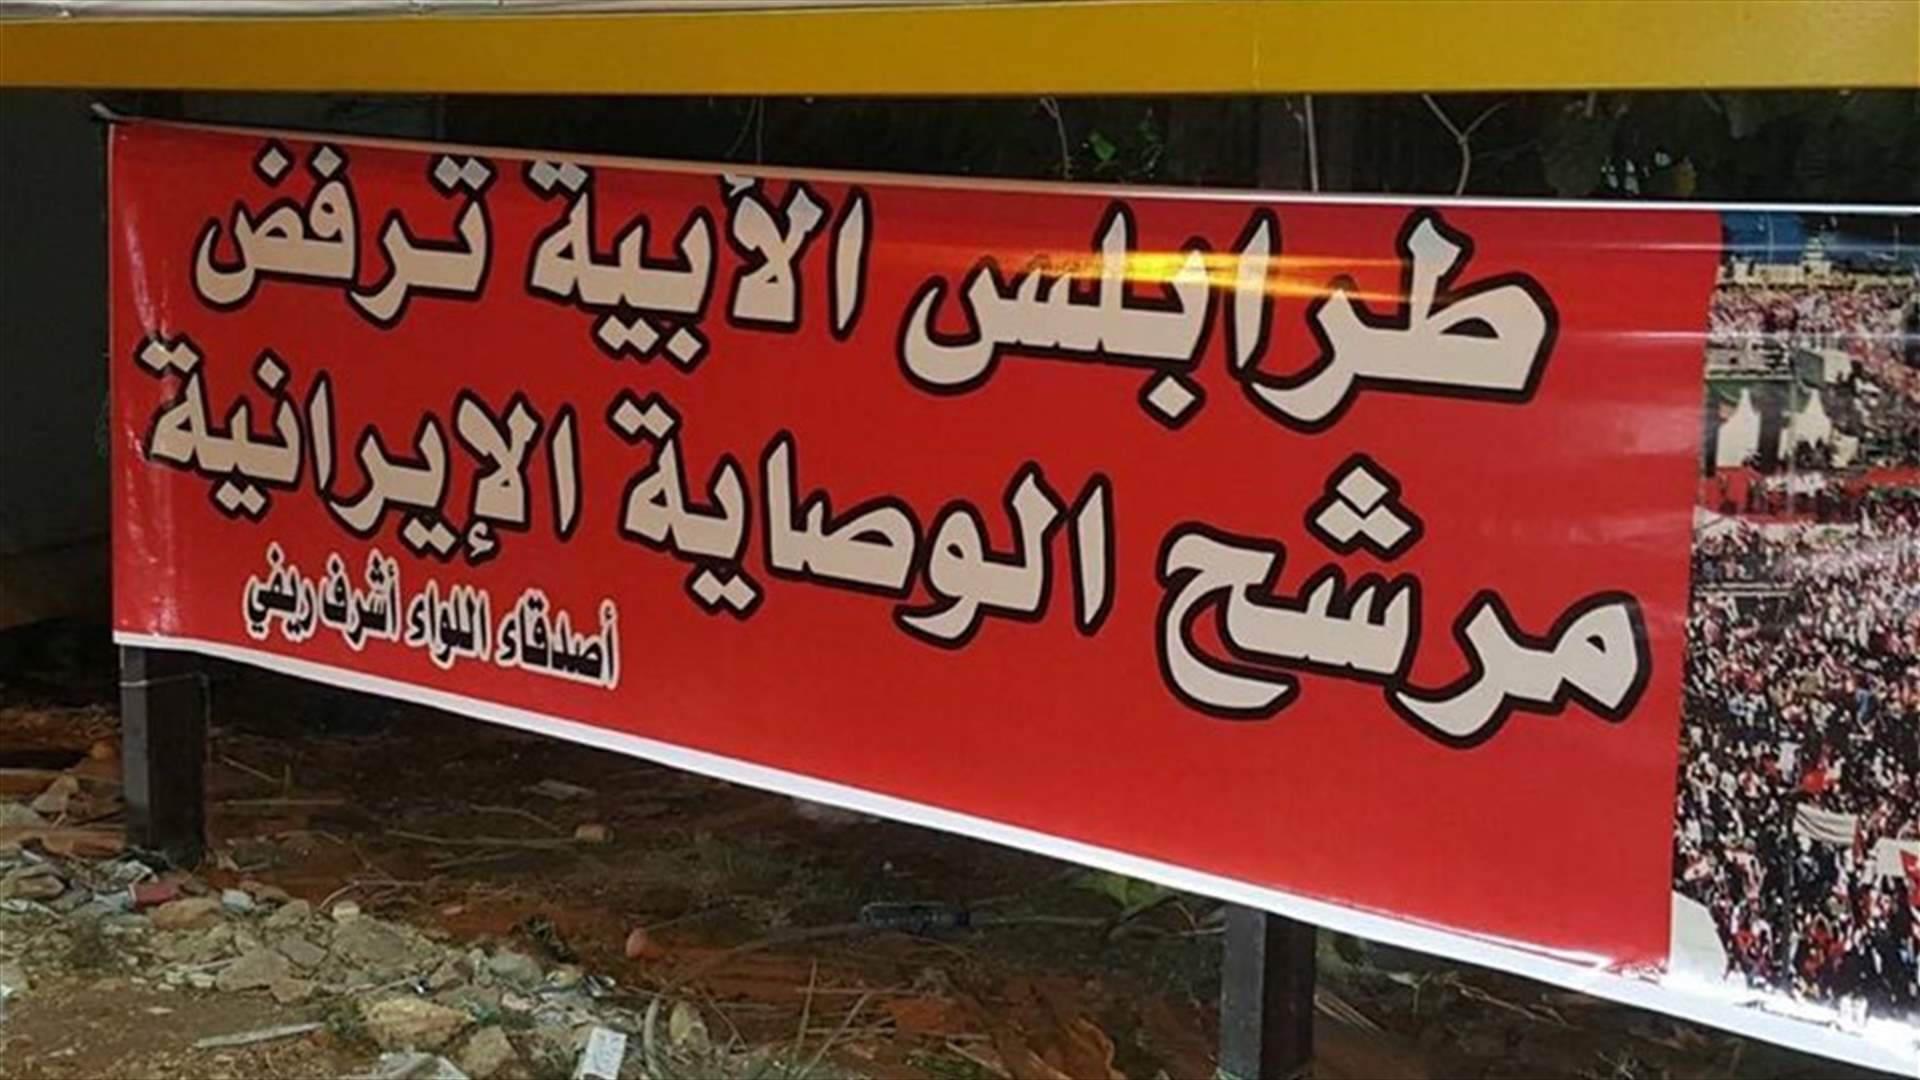 بالصور: يافطات في طرابلس منددة بدعم الحريري لعون